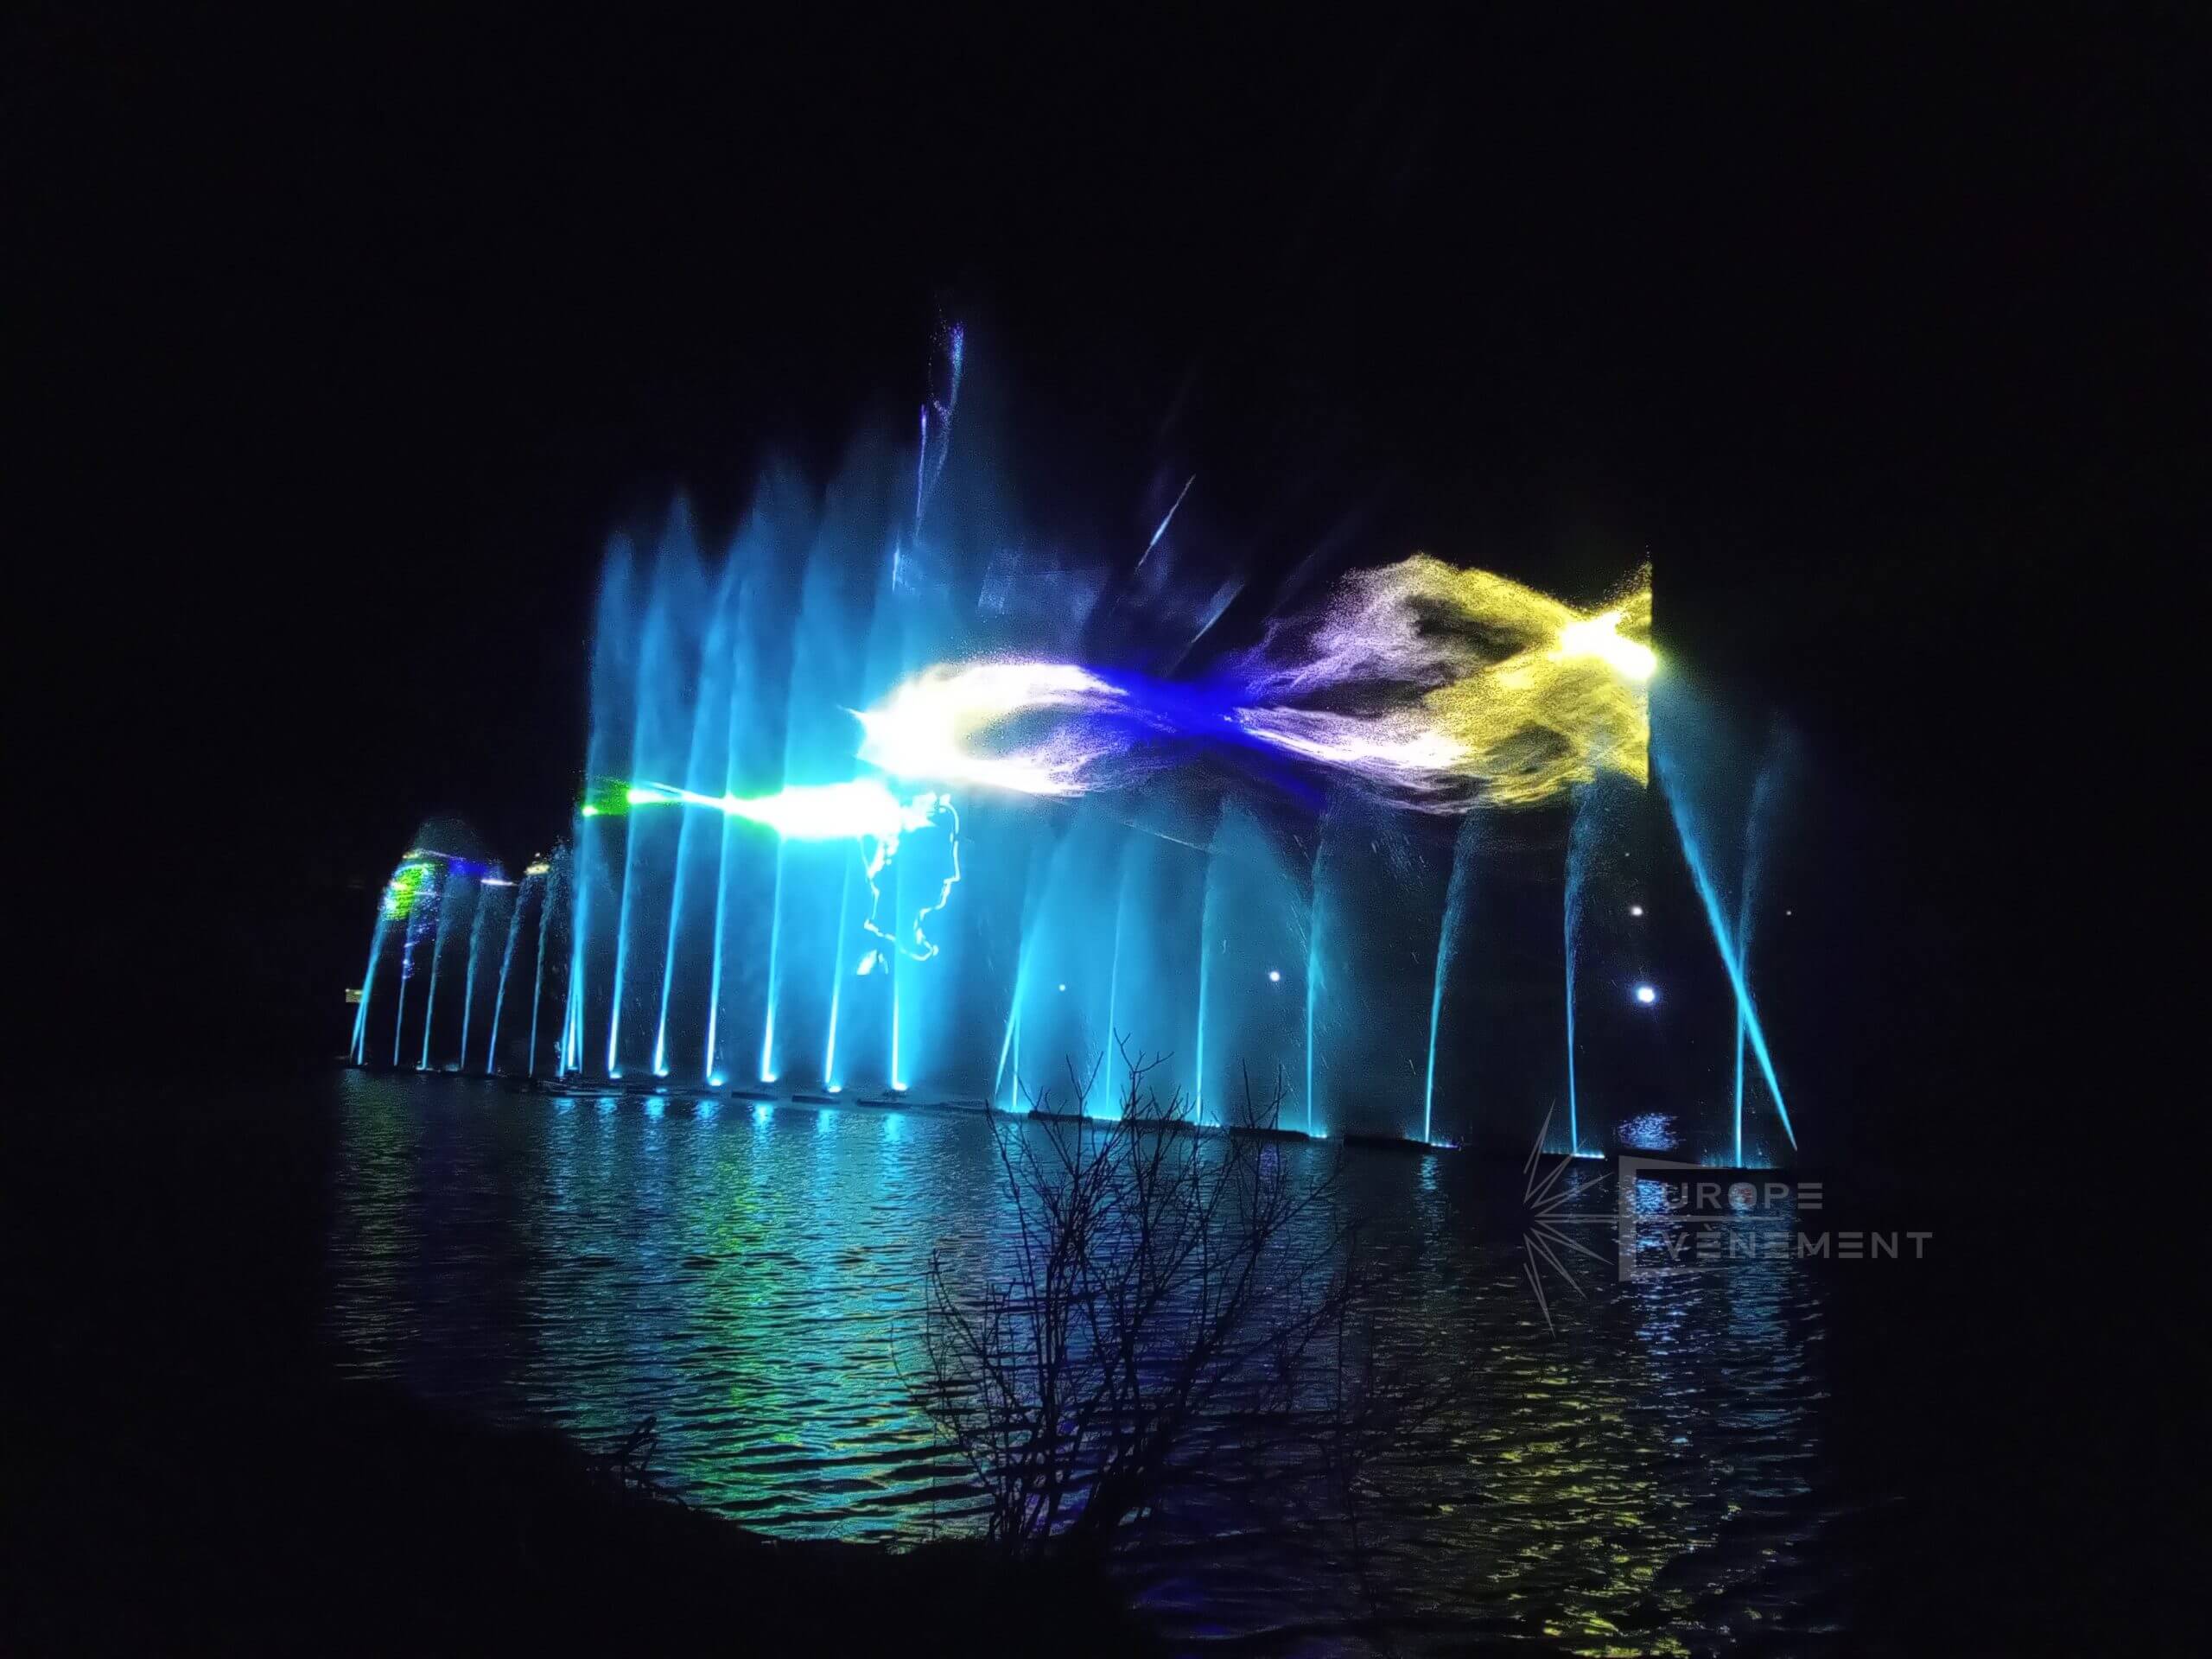 Atlantid - Projection de formes abstraites au laser sur jets d'eau